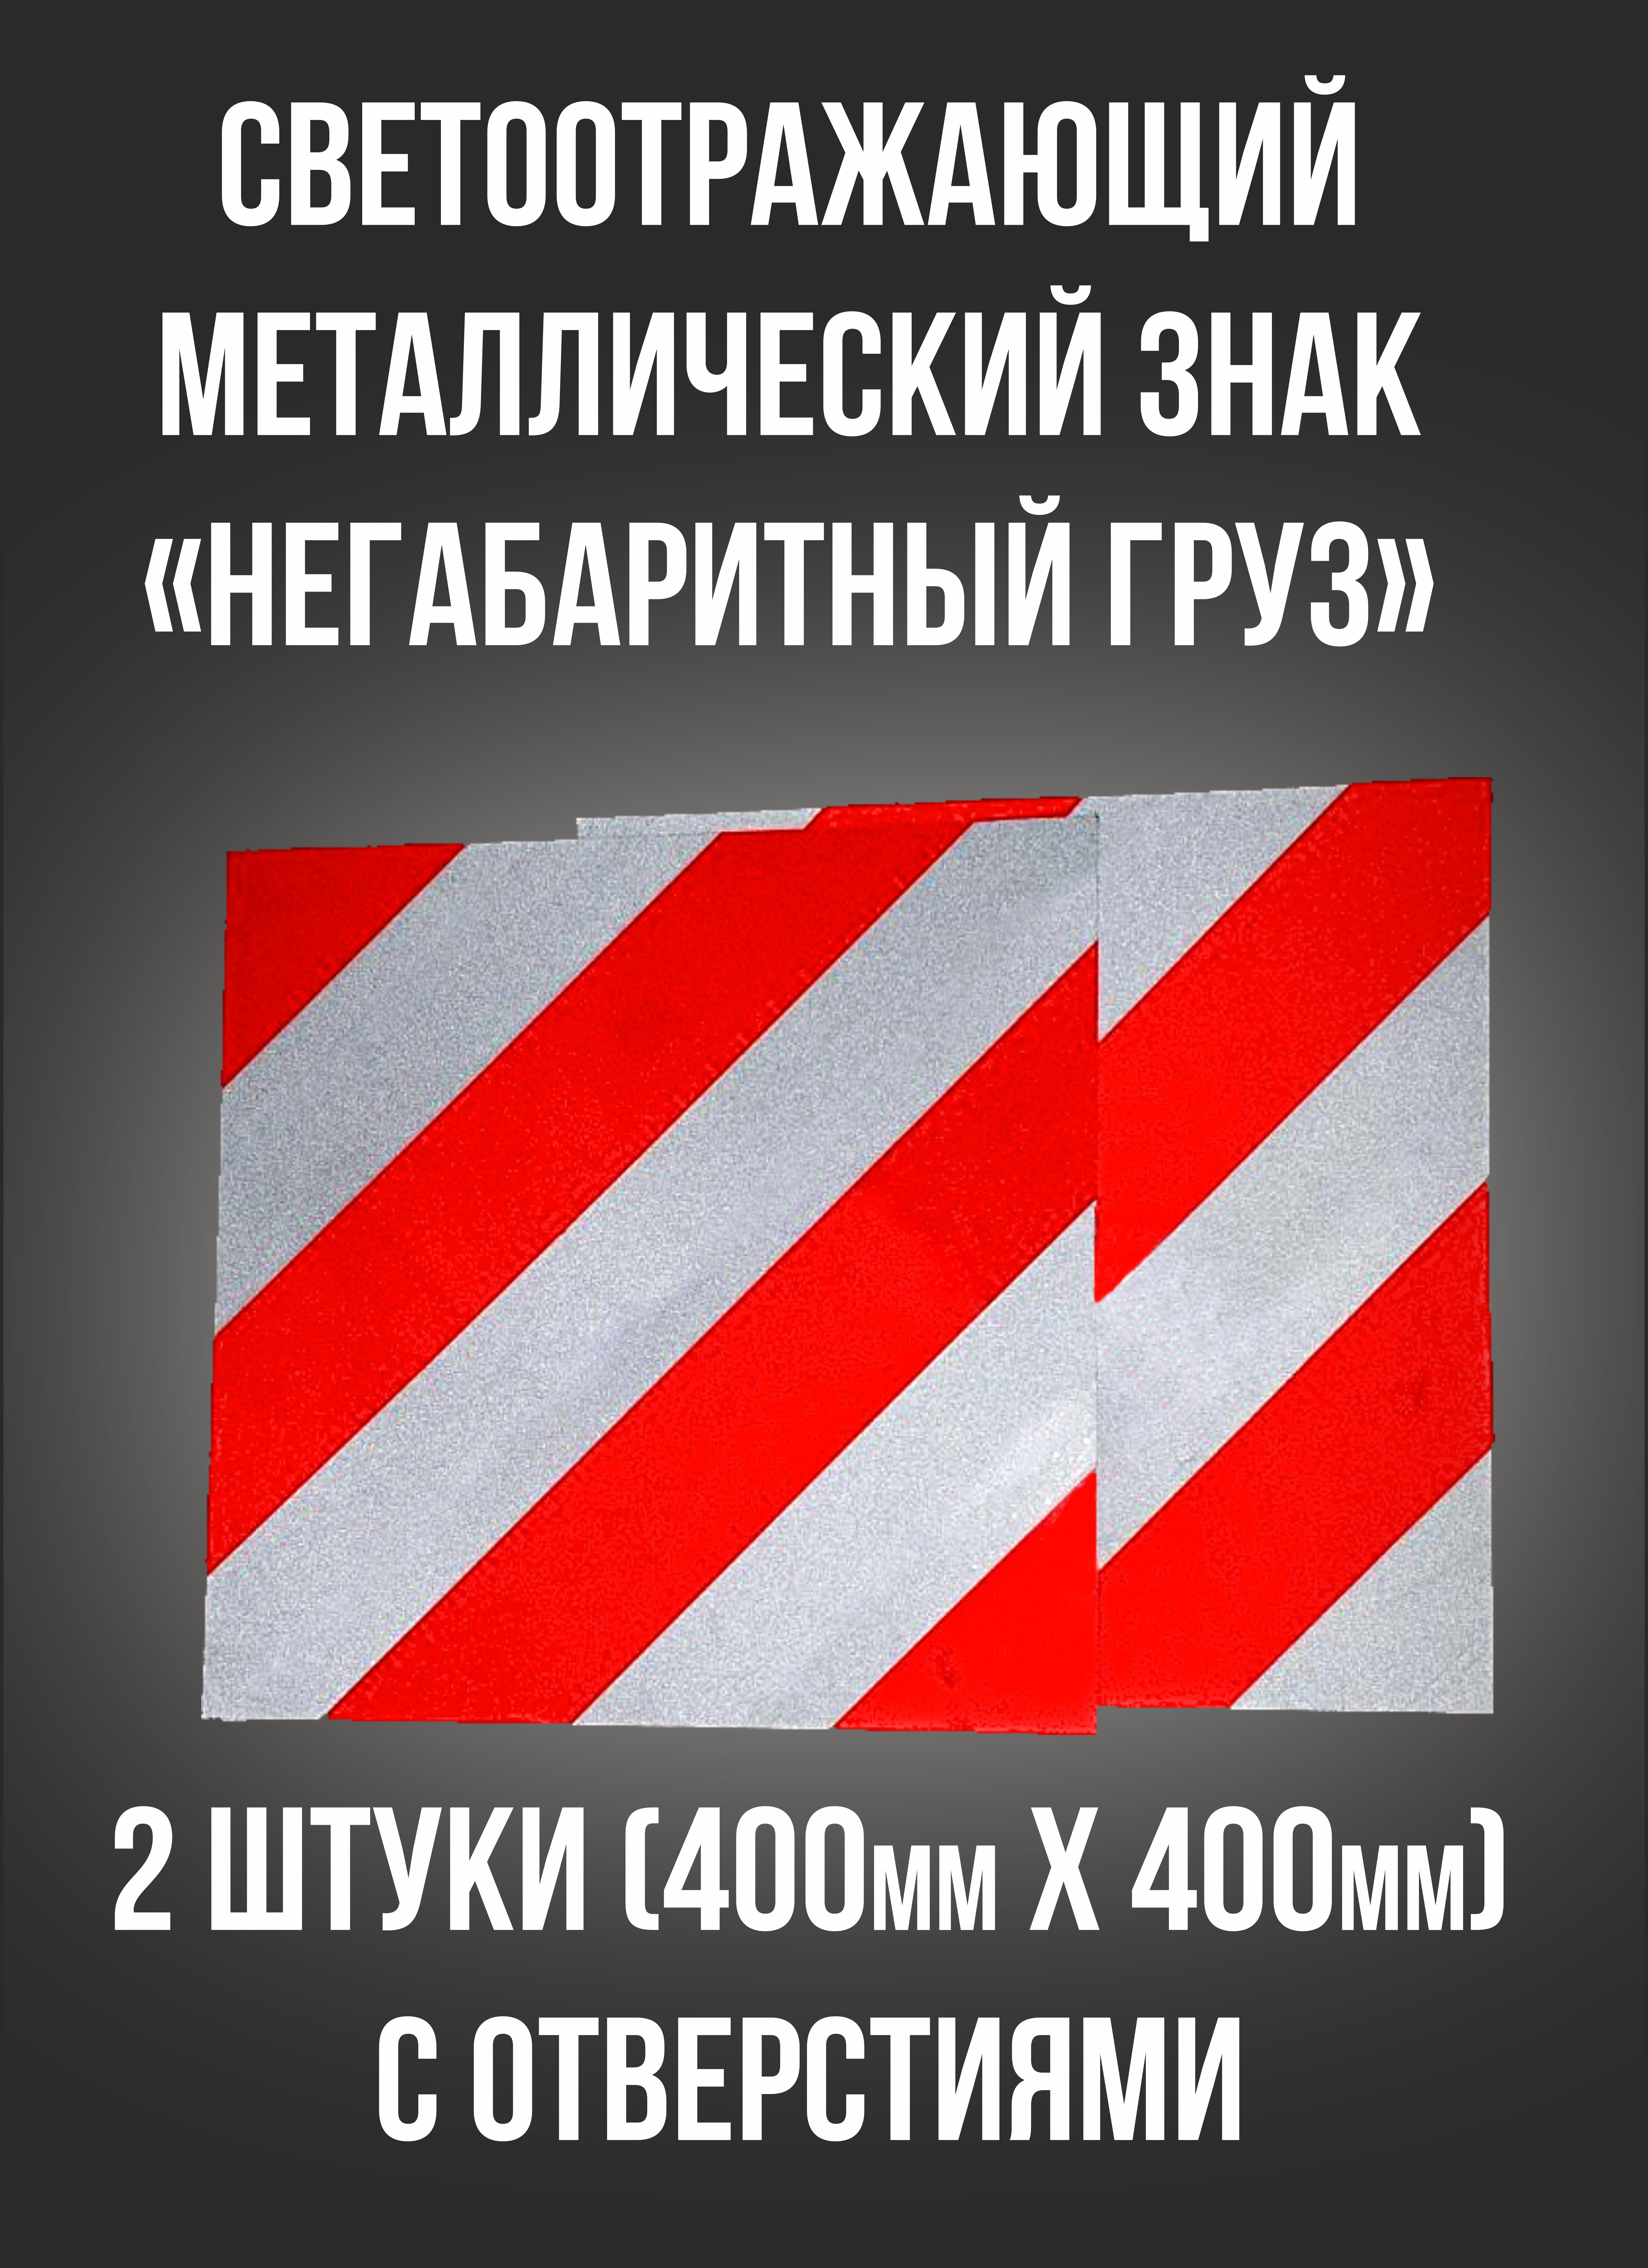 Металлический знак Крупногабаритный груз 400х400 набор 2 штуки